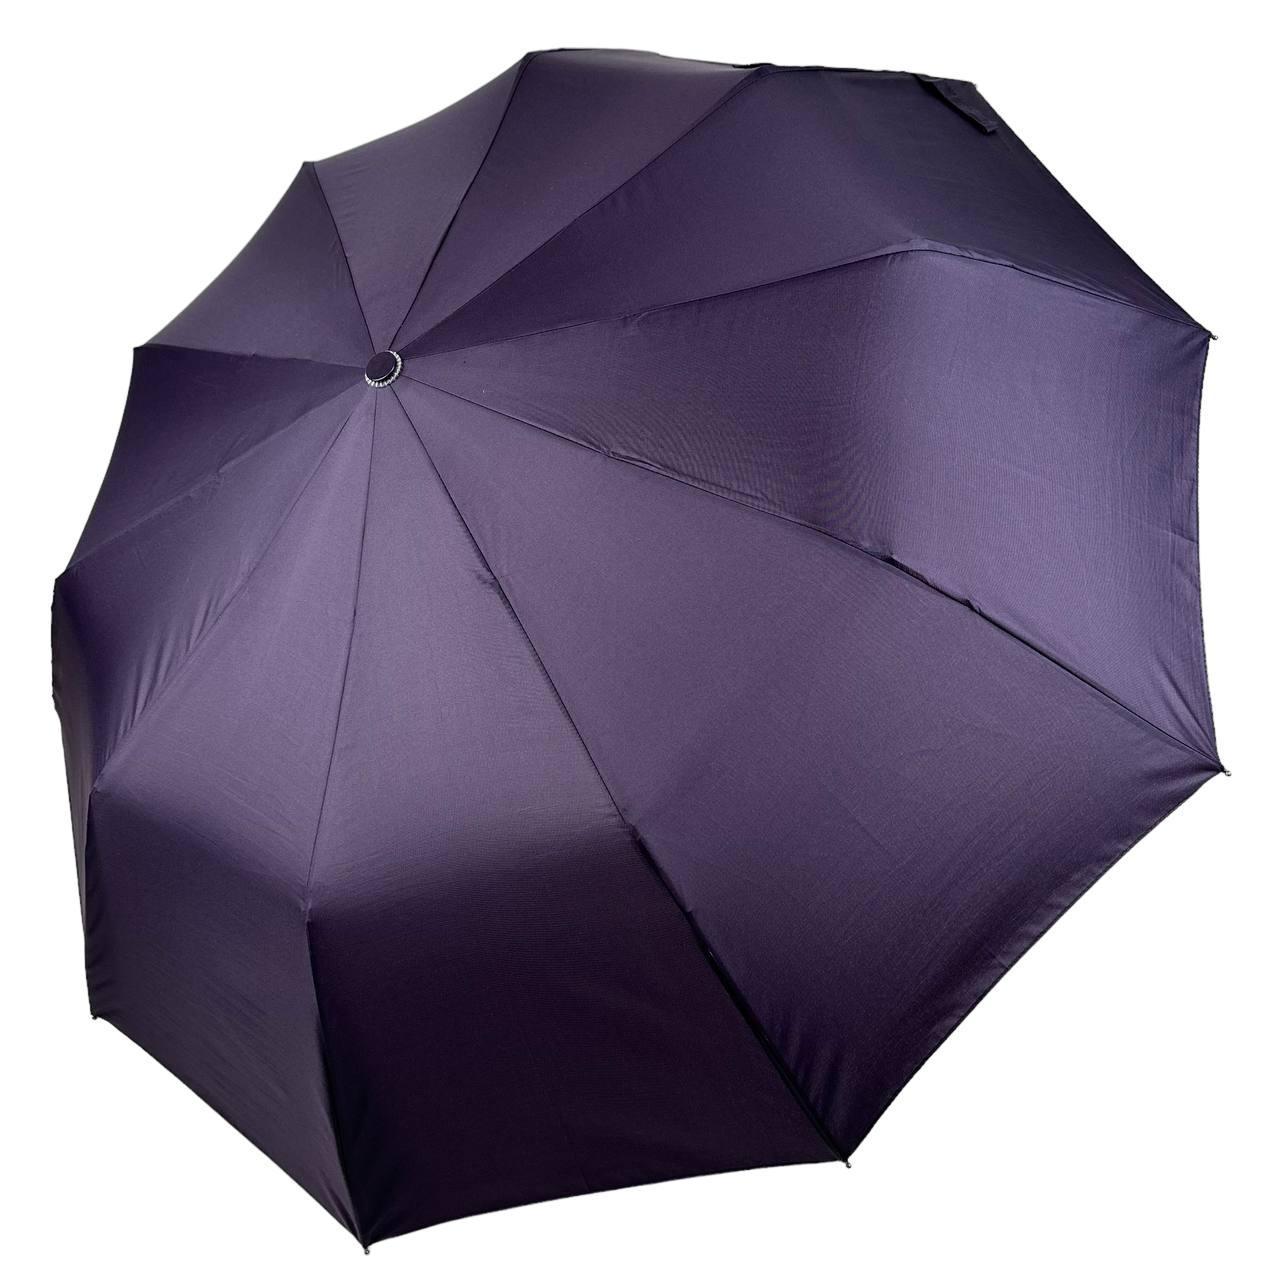 Складана однотонна парасолька напівавтомат від Bellissimo антивітер фіолетовий М0533-1 SC, код: 8324042